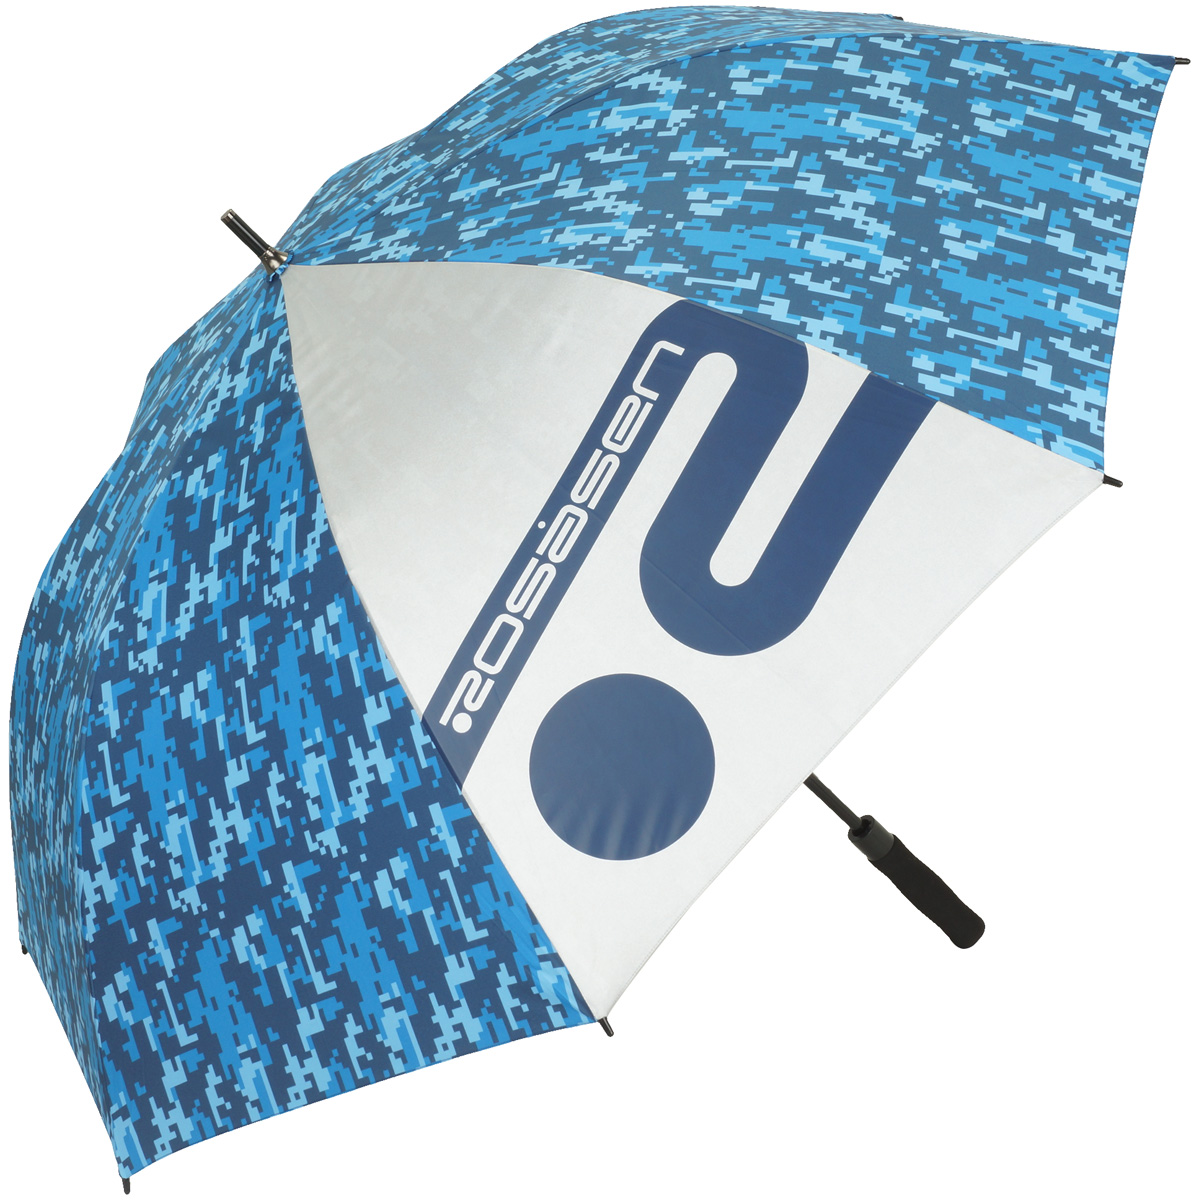  傘 